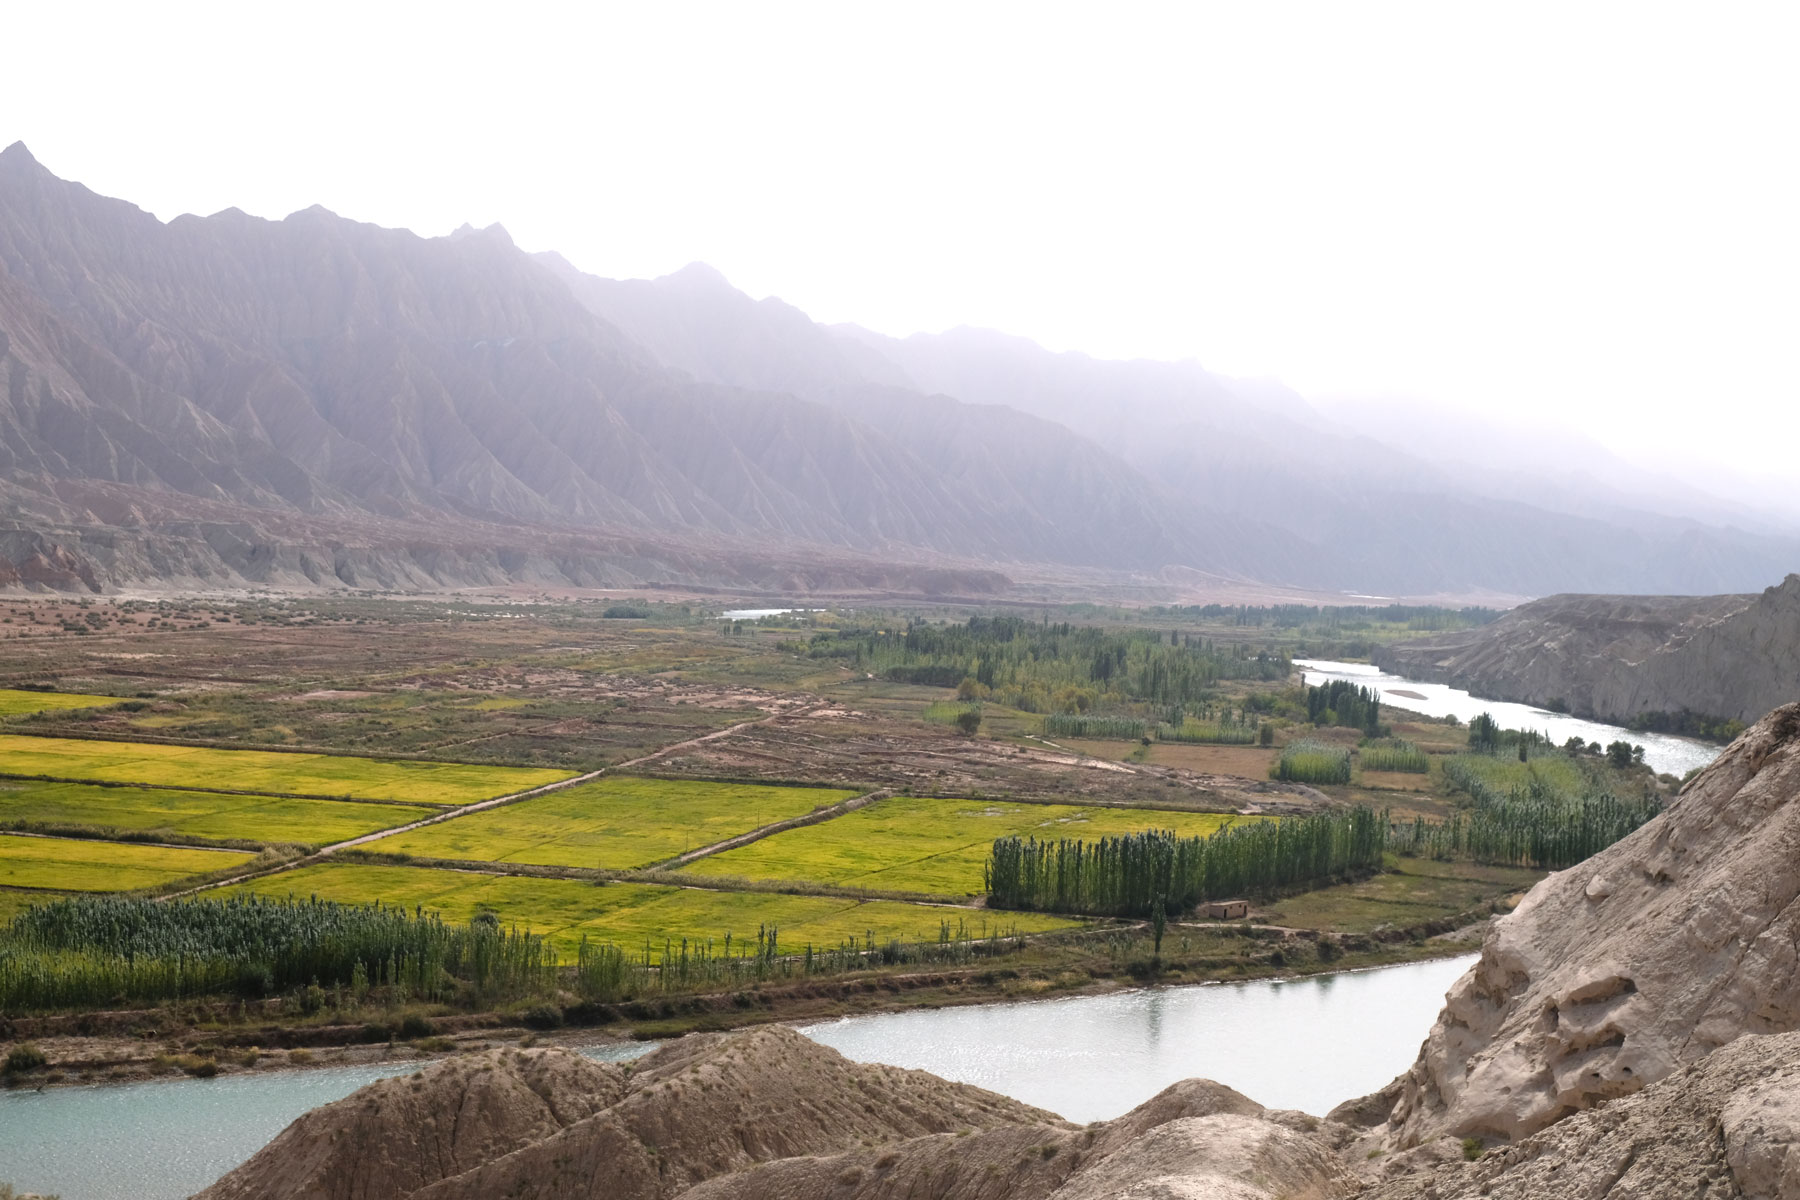 Fluss neben Reisfeldern in Xinjiang.